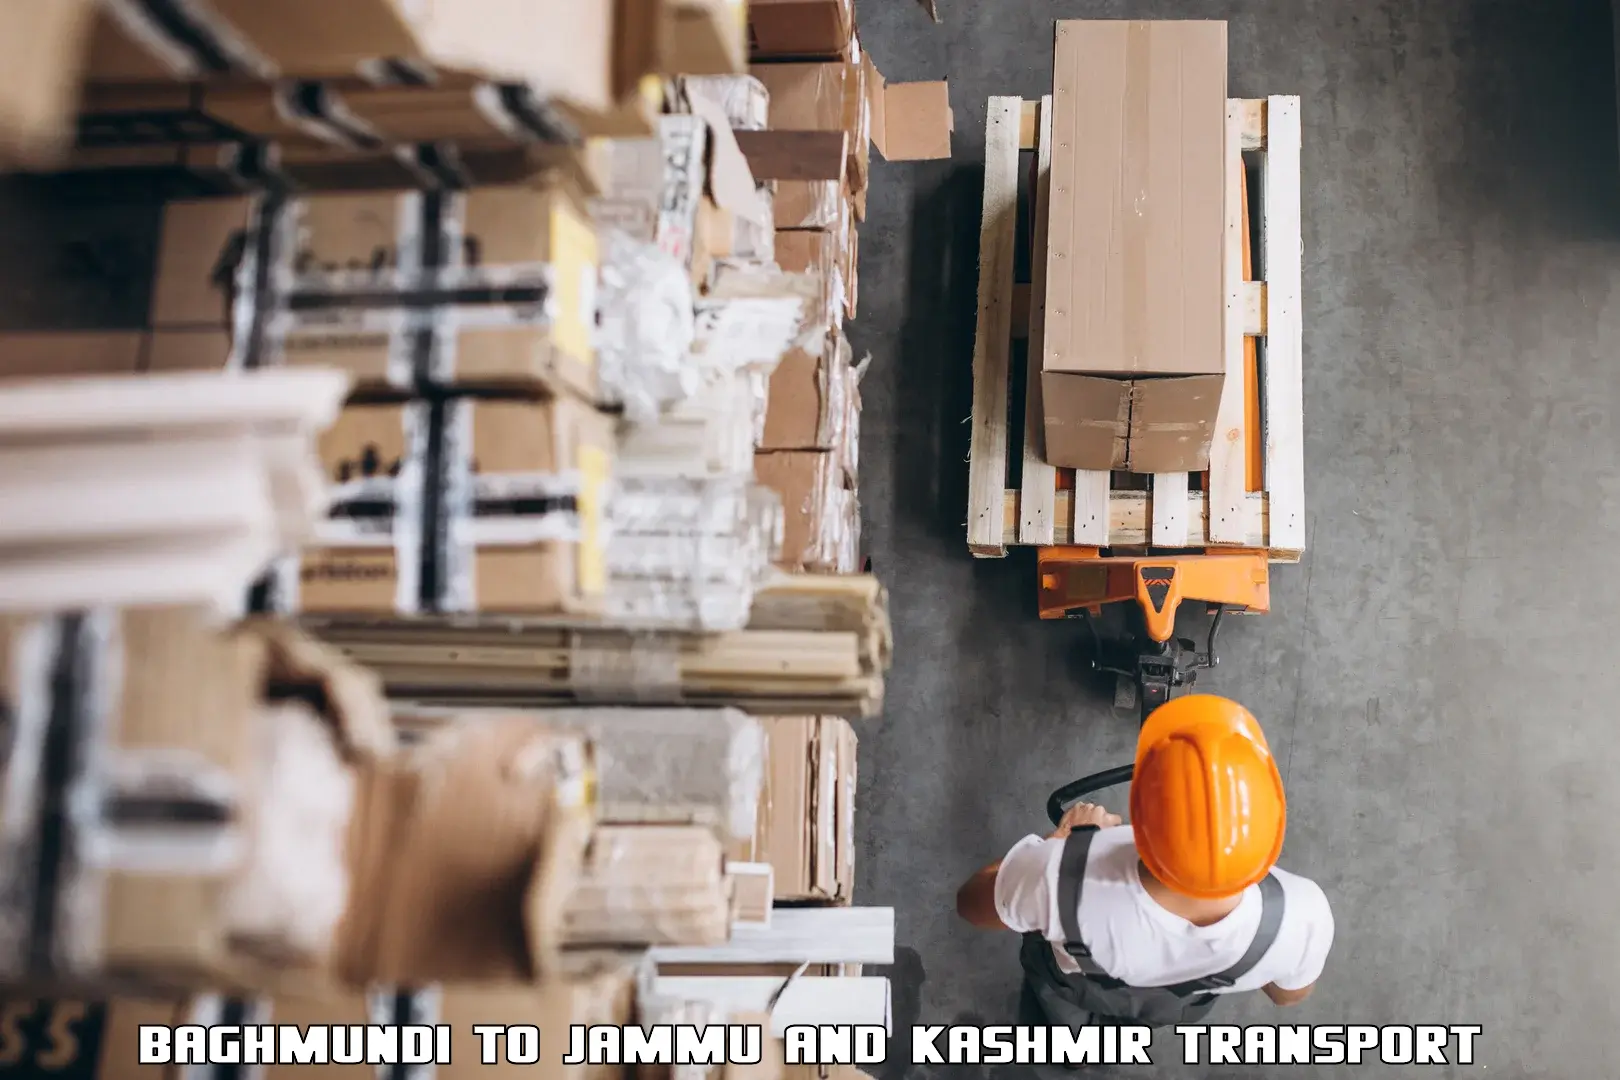 Cargo transport services Baghmundi to University of Jammu